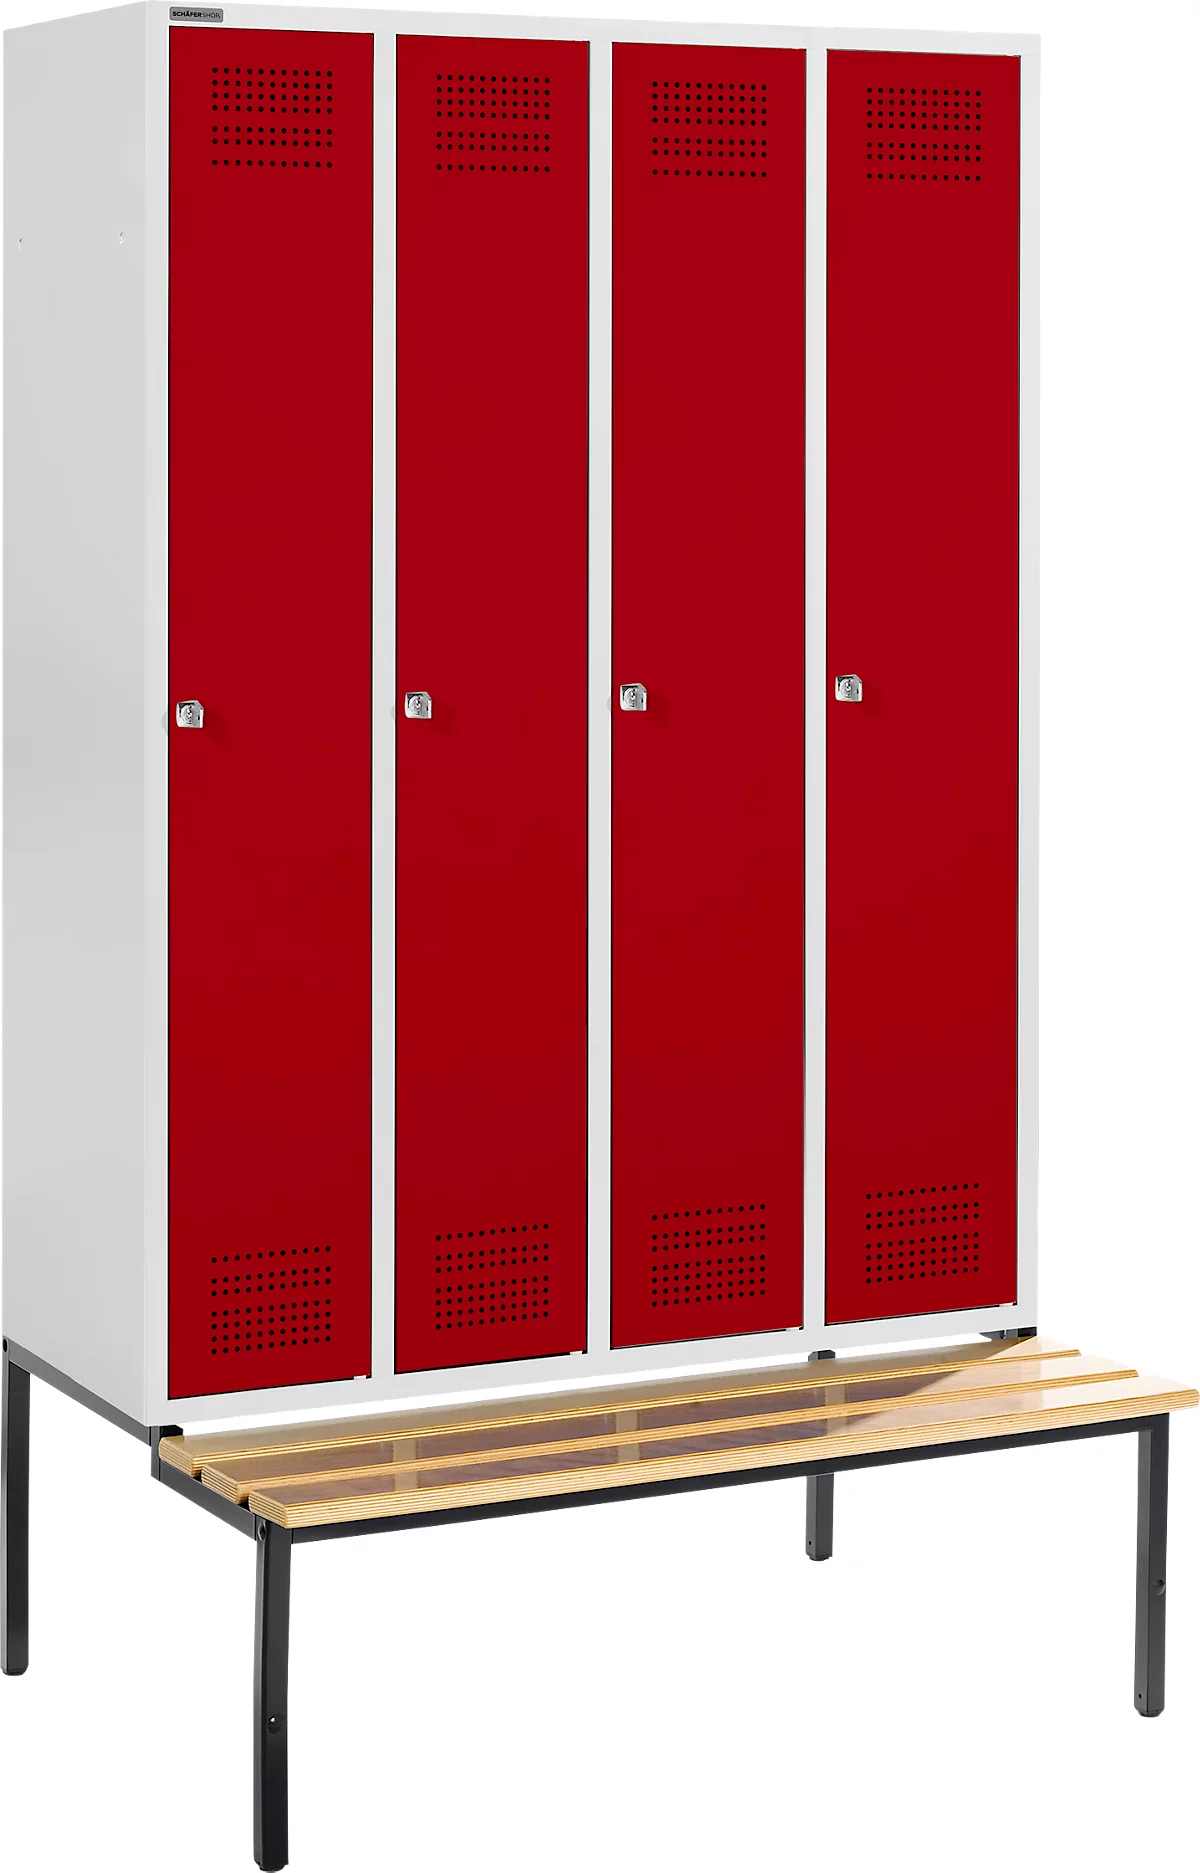 Schäfer Shop Genius Taquilla con banco, 4 compartimentos, cerradura de cilindro, gris luminoso/rojo